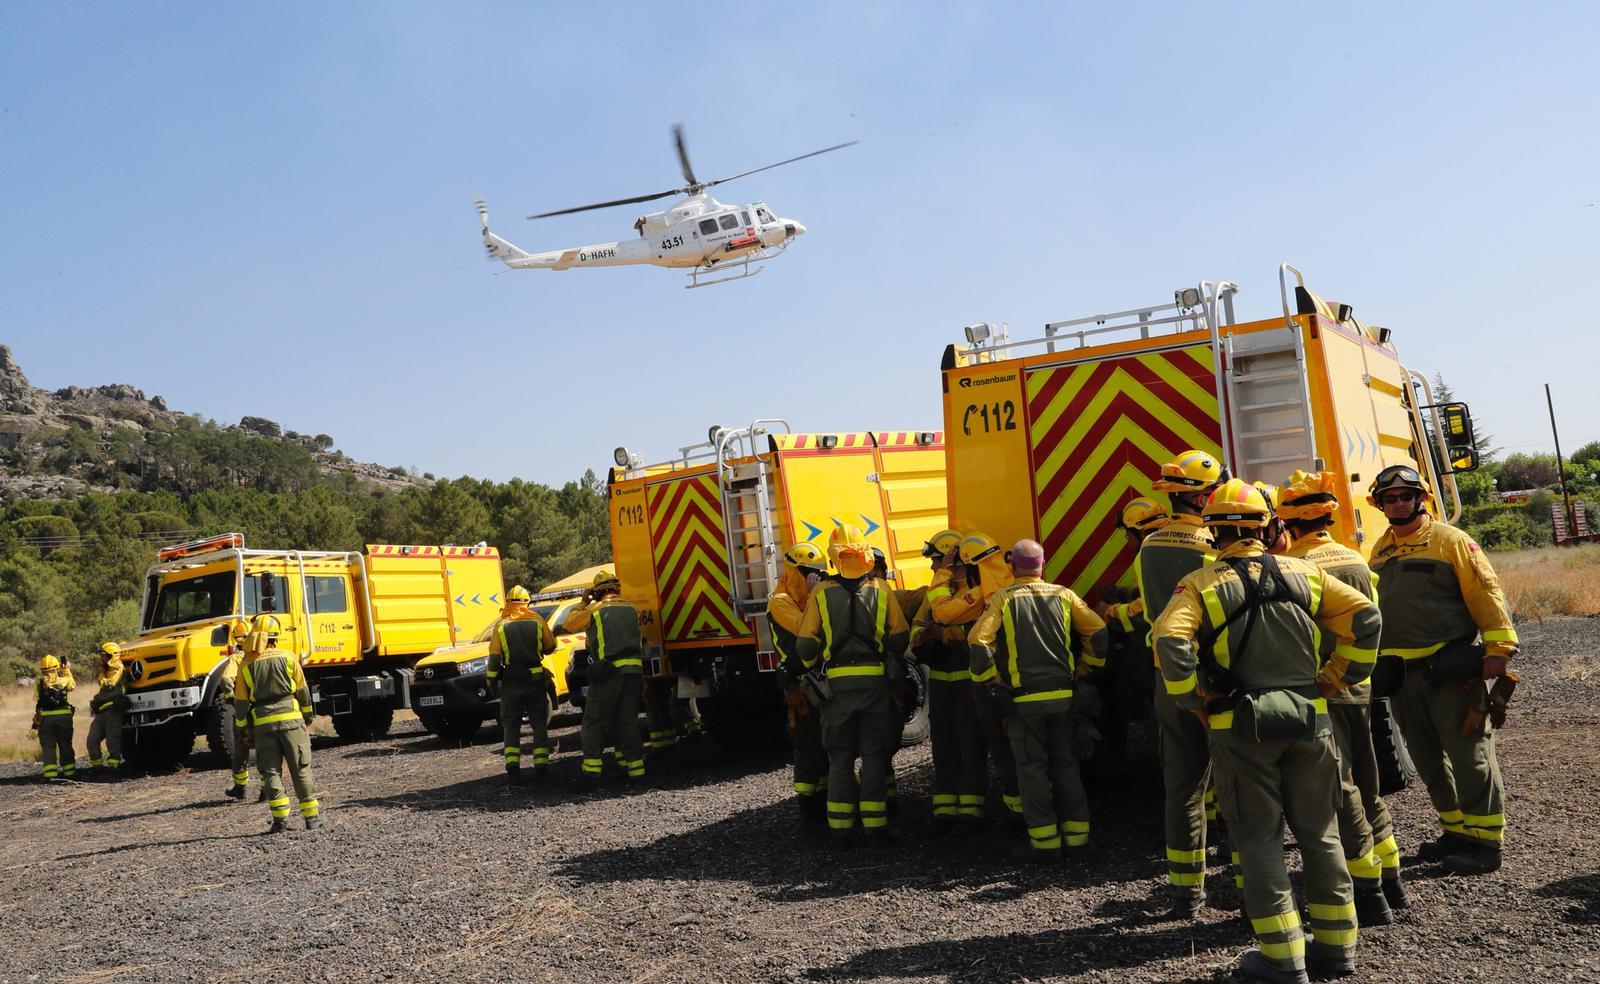 Participan en las labores de extinción miembros del operativo de emergencia: bomberos, agentes forestales y efectivos de la UME.